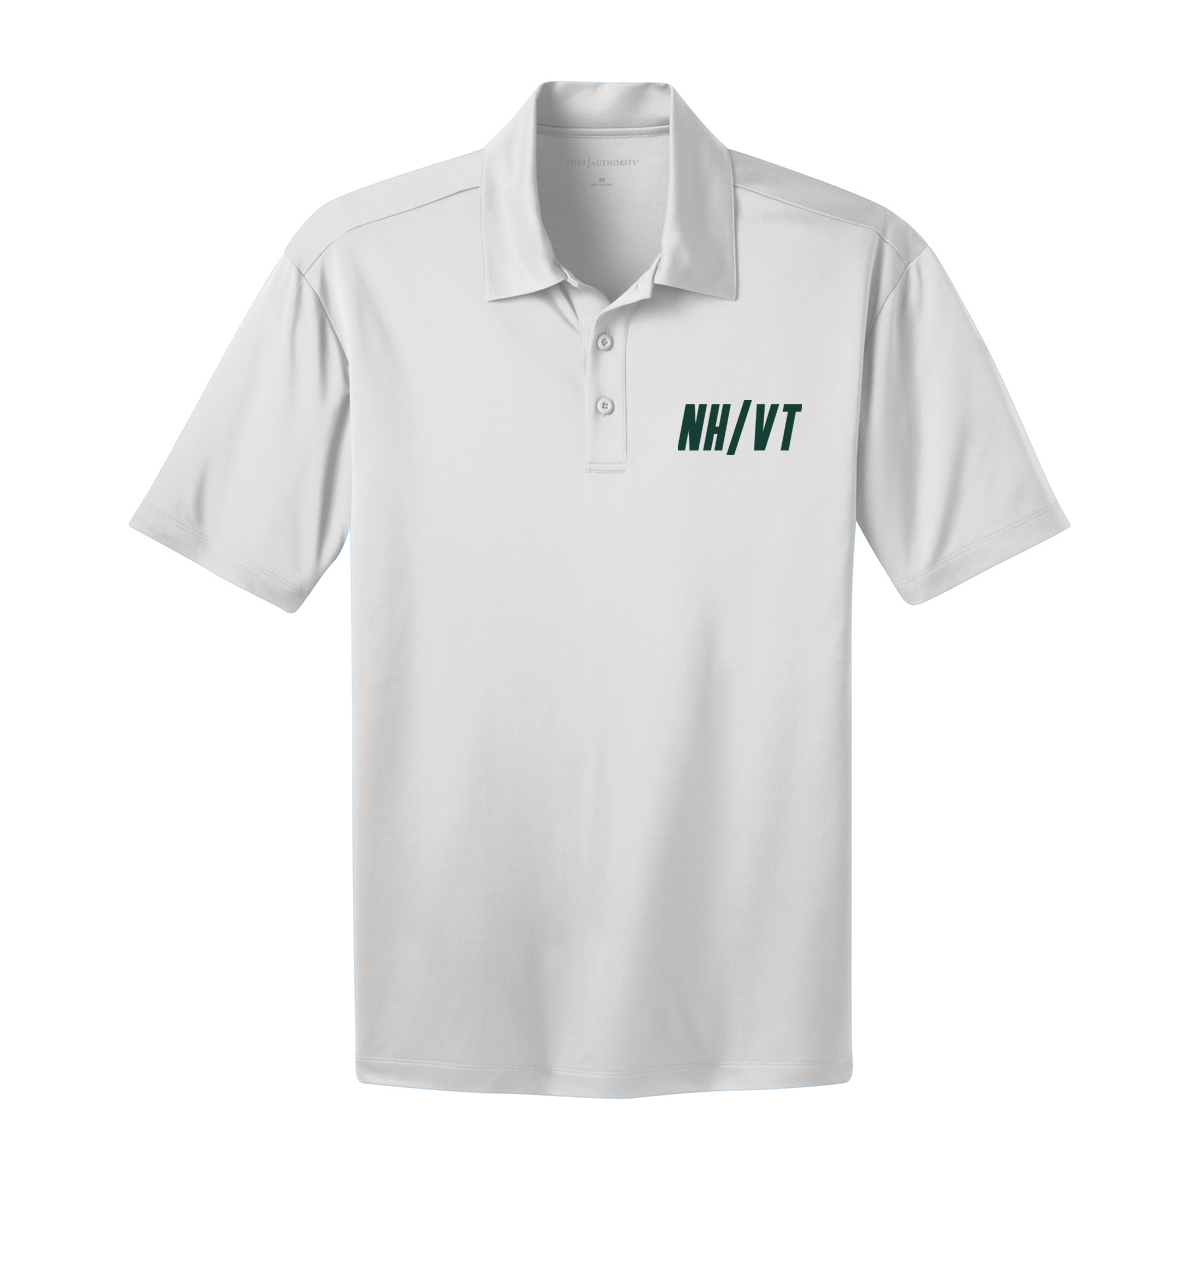 NH/VT Lacrosse - Men's Coaching Polo - White